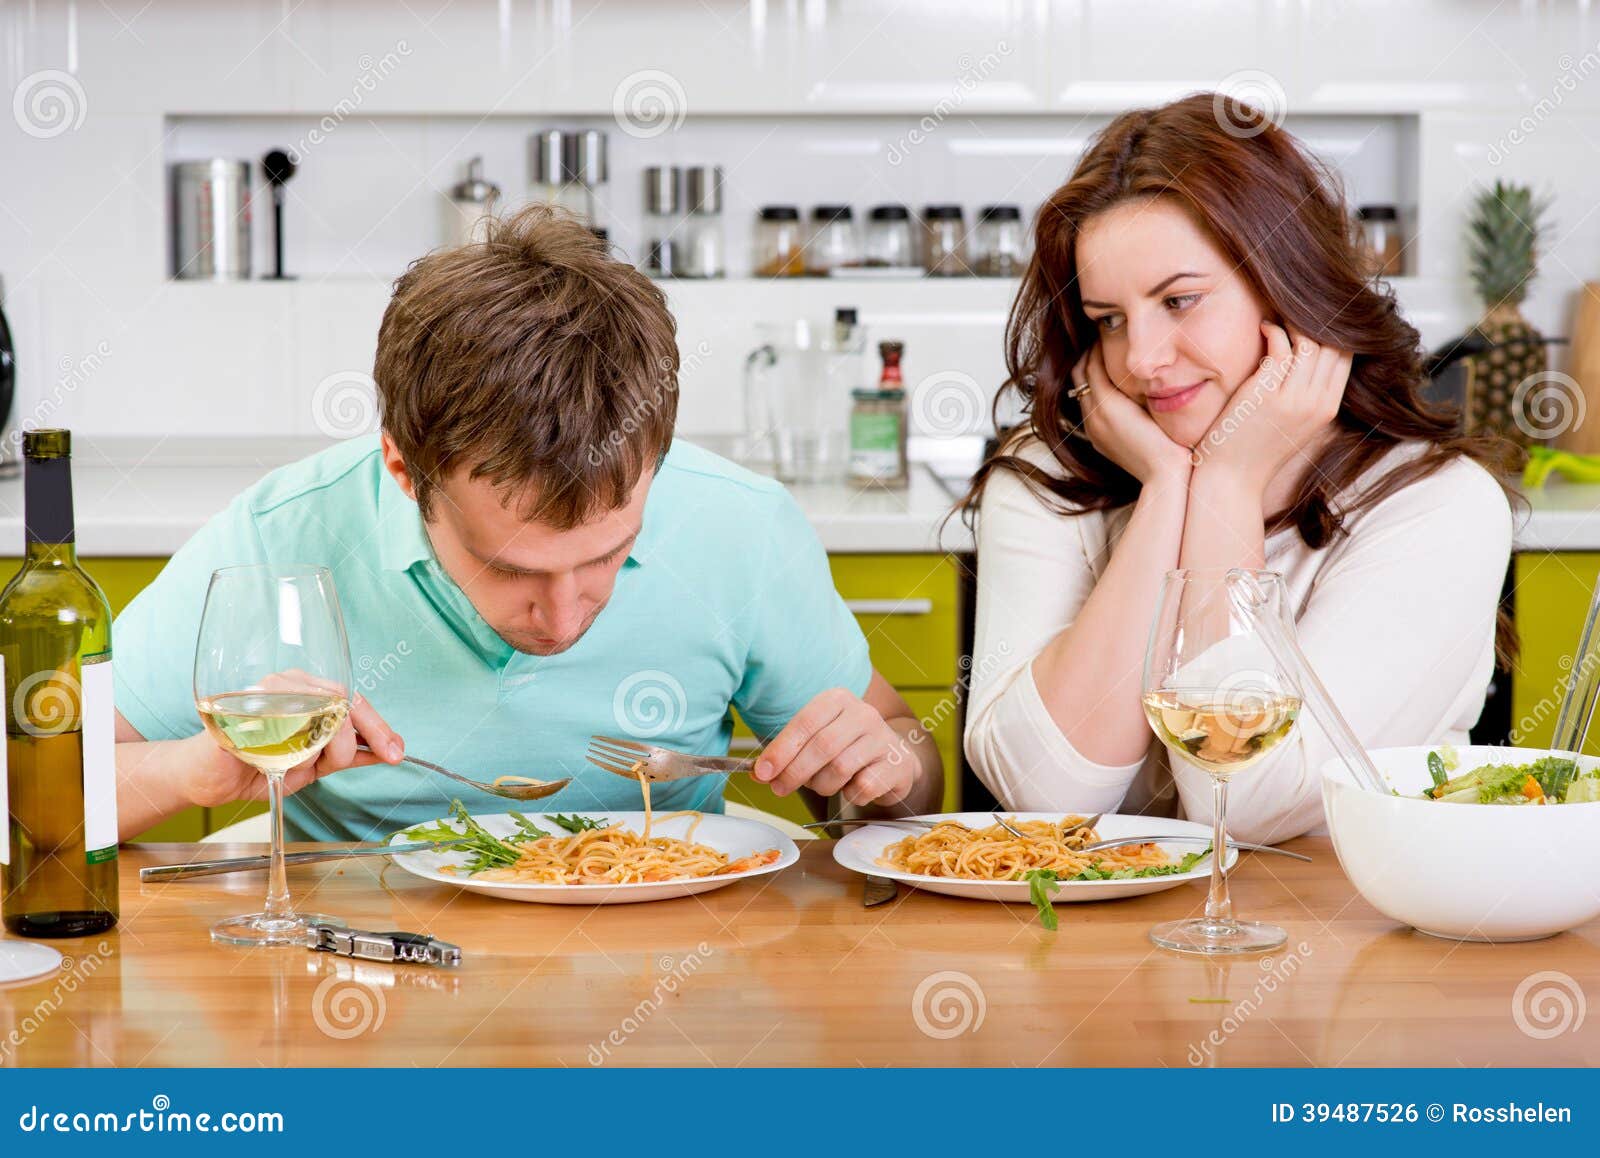 Пока жена готовит муж. Мужчина и женщина ужинают. Мужчина и женщина завтракают. Супруги за столом. Муж ужинает на кухне.